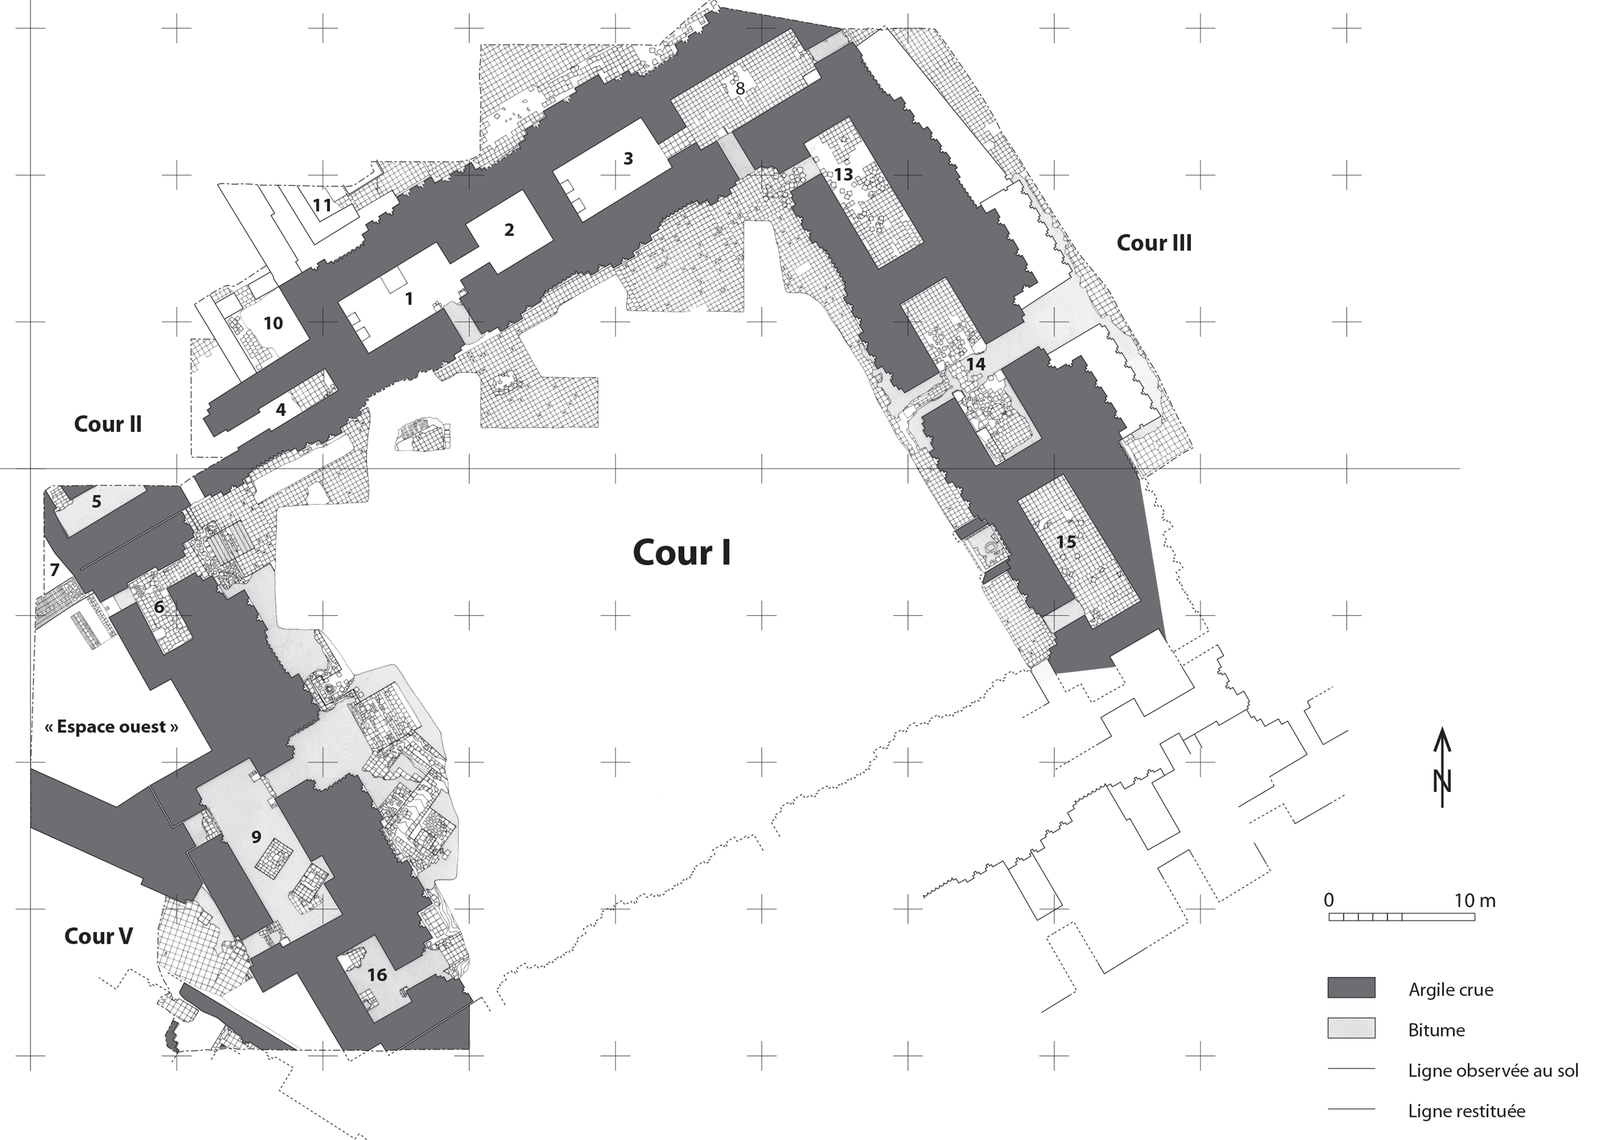 Plan général de la cour I. © Mission Archéologique française de Larsa-‘Oueili, publié dans Huot, 2014, p. 10, fig. 5 (DAO Hélène David-Cuny)